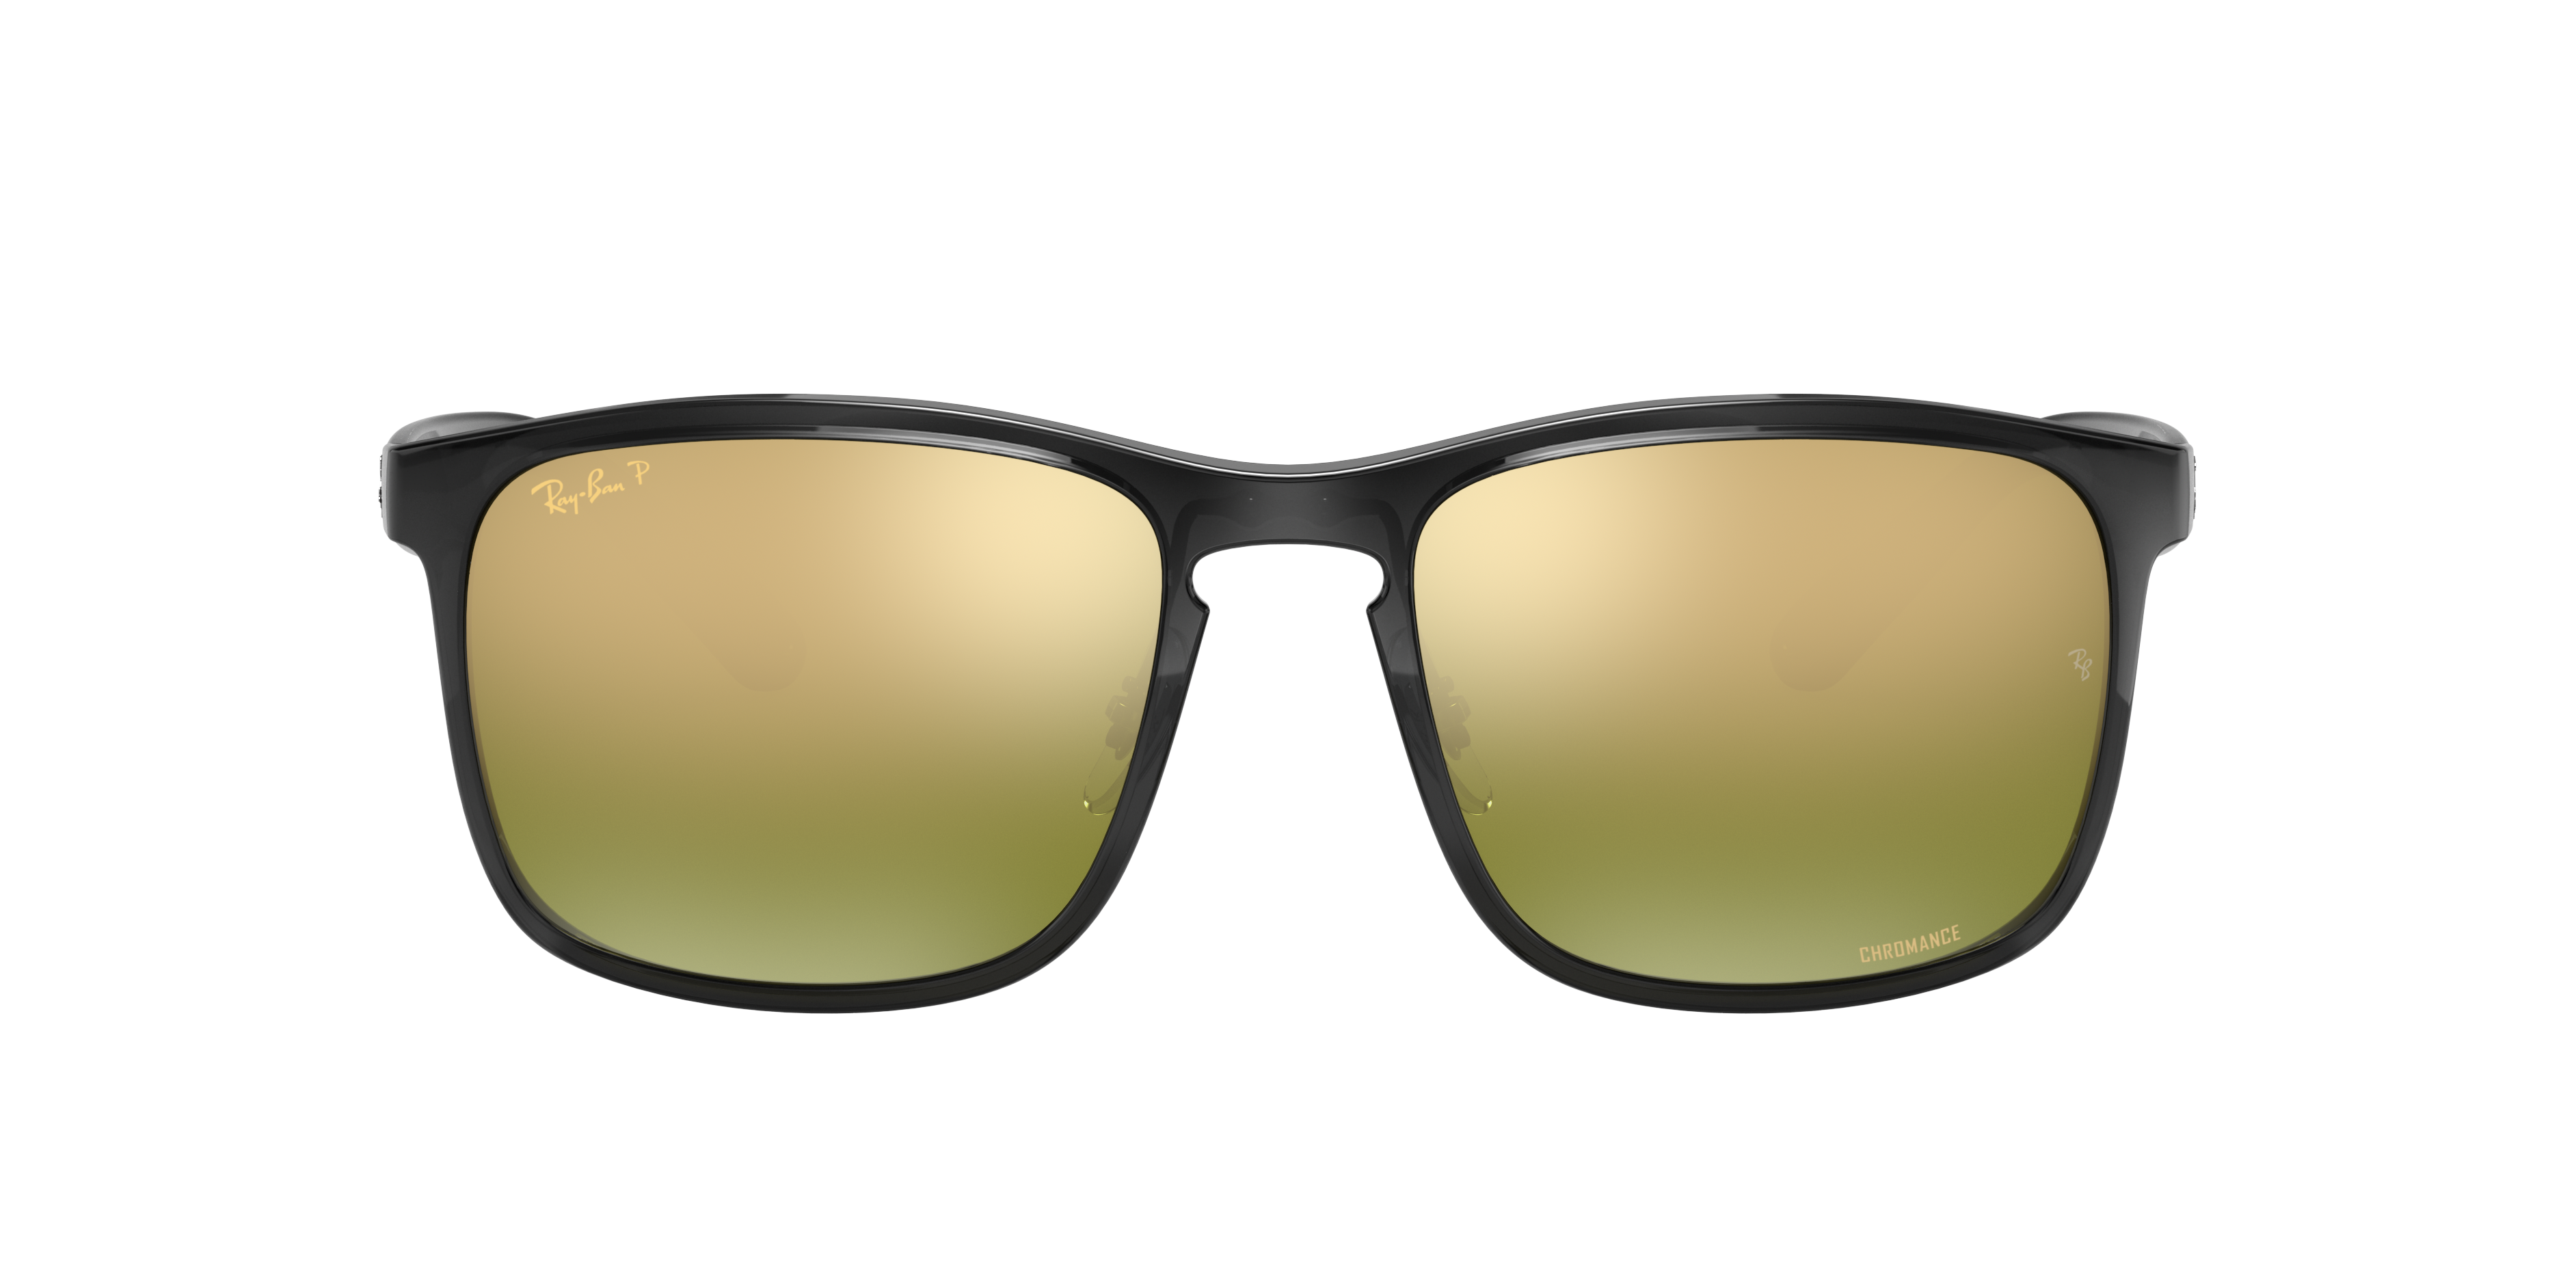 Sunglass Hut Collection HU1001 59 Polarized Green Classic G-15 & Black  Polarized Sunglasses | Sunglass Hut USA